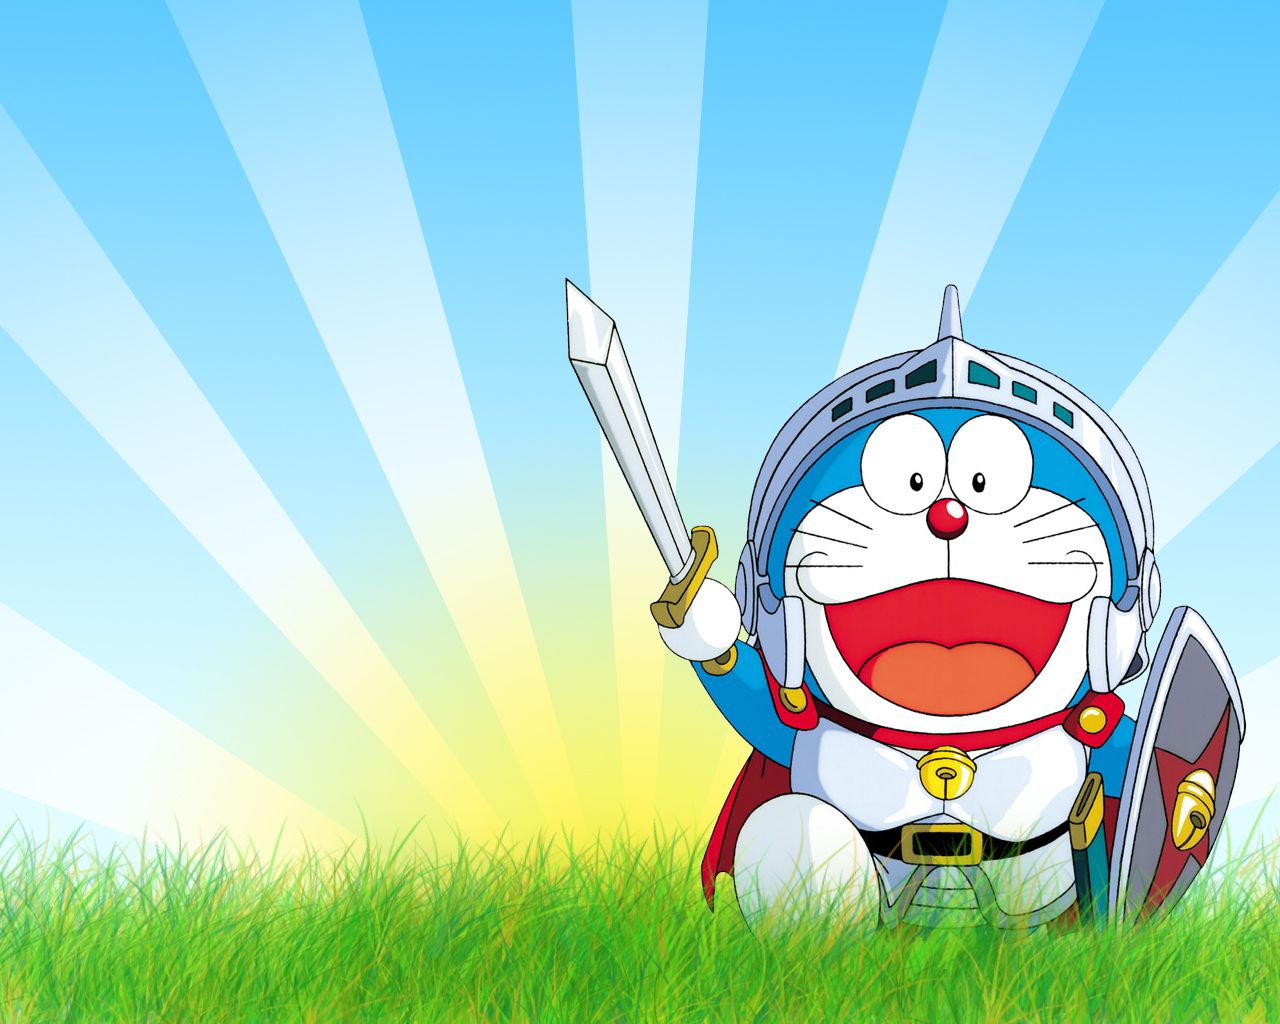 Hình động Doraemon sẽ đem đến cho bạn những giây phút phiêu lưu thú vị cùng chú mèo máy thông minh nhất thế giới. Hãy thưởng thức các chuyến phiêu lưu đầy kỳ diệu của Doraemon ngay trong hình động này.